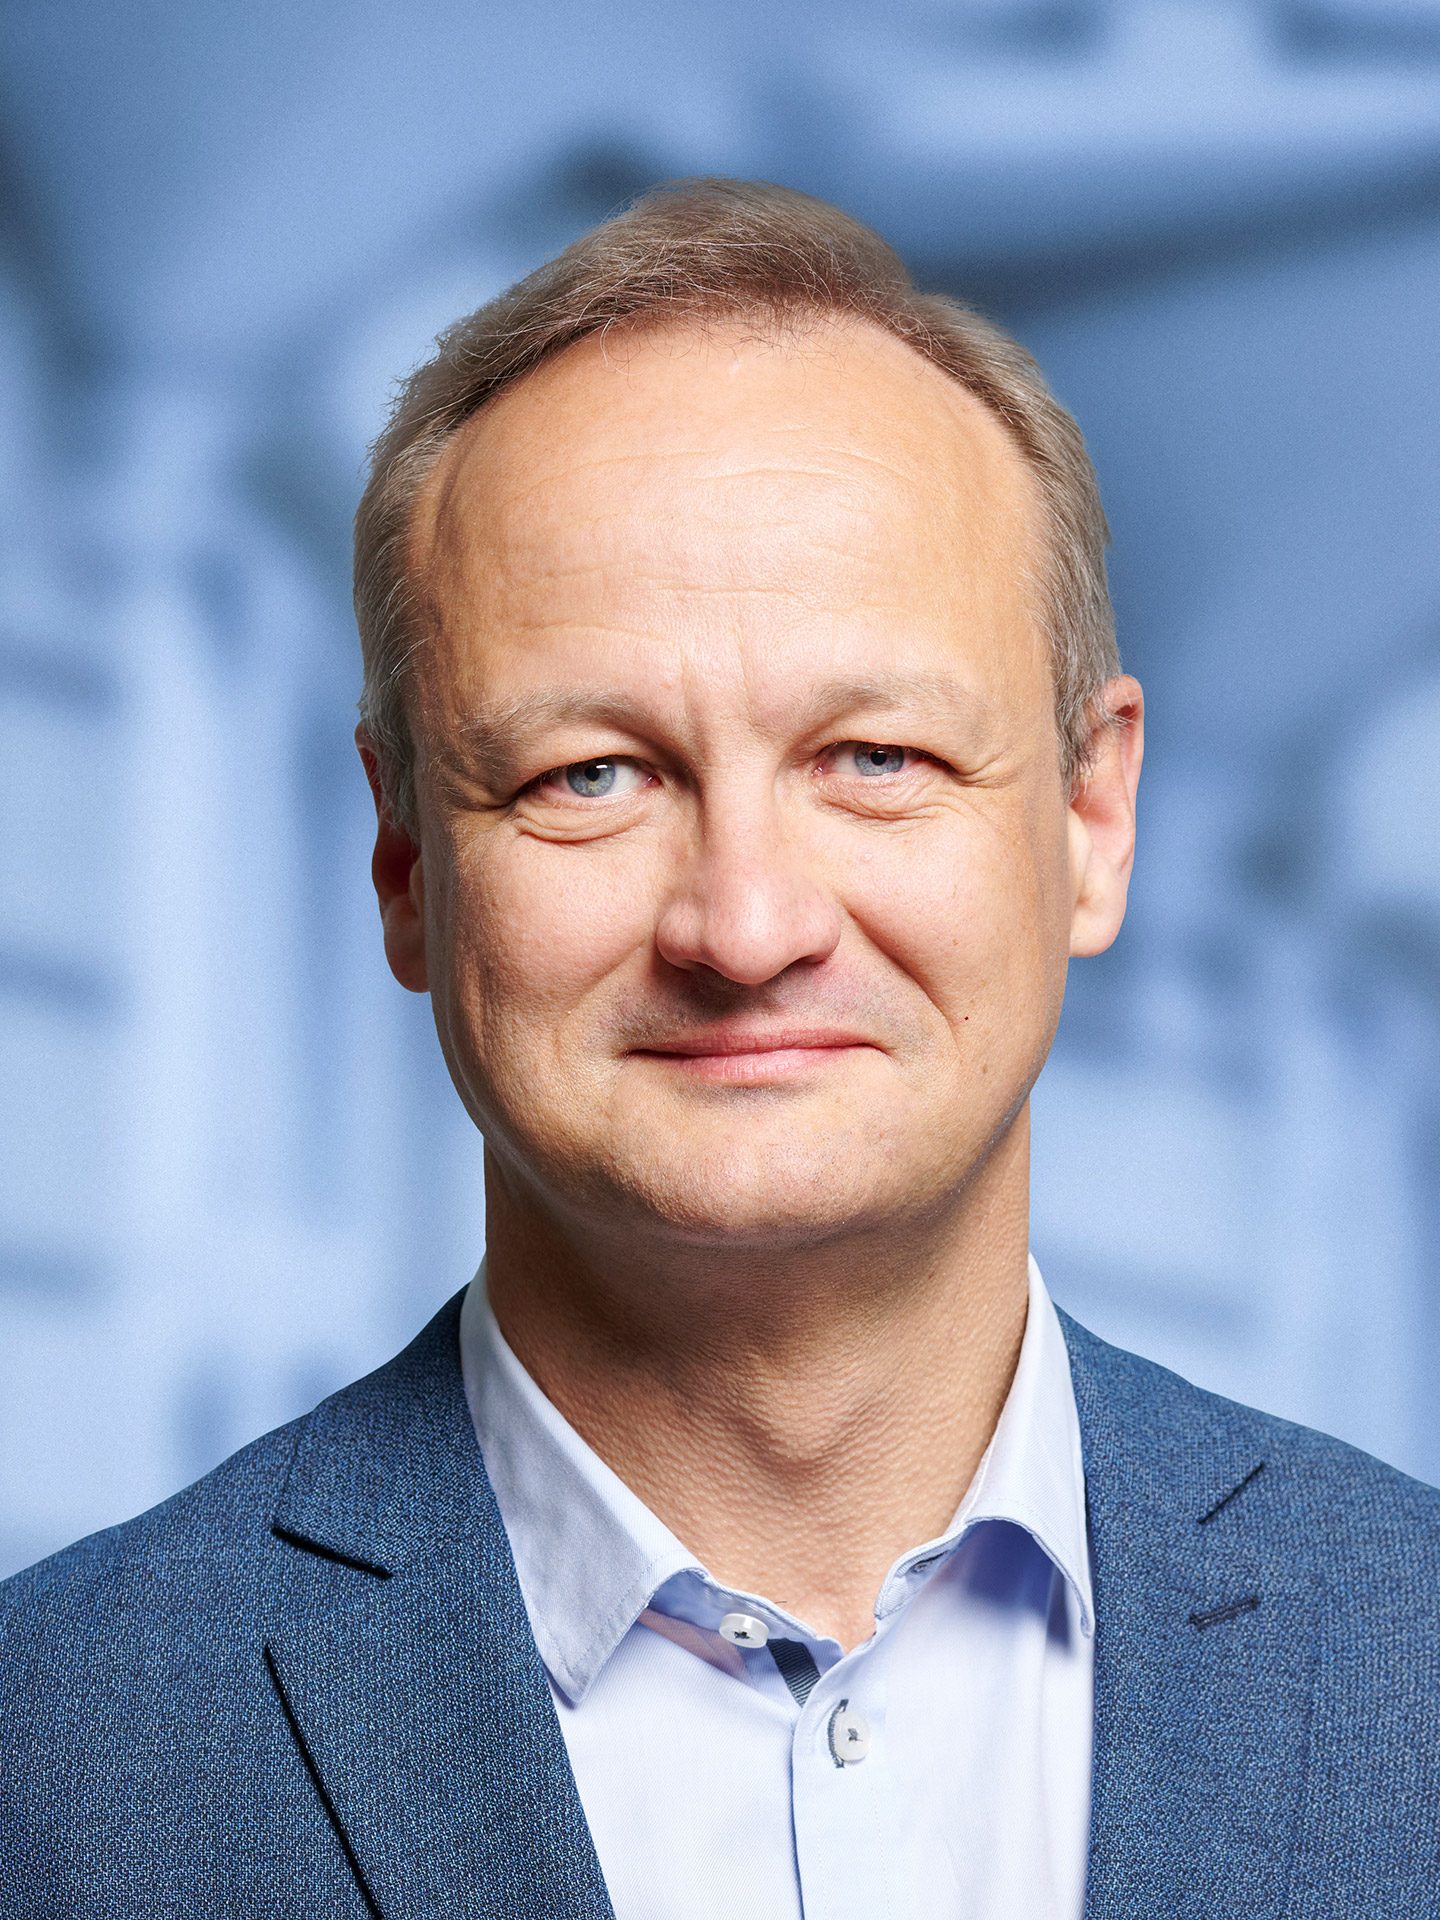 Byrådskandidat for Venstre - Lars Jensen